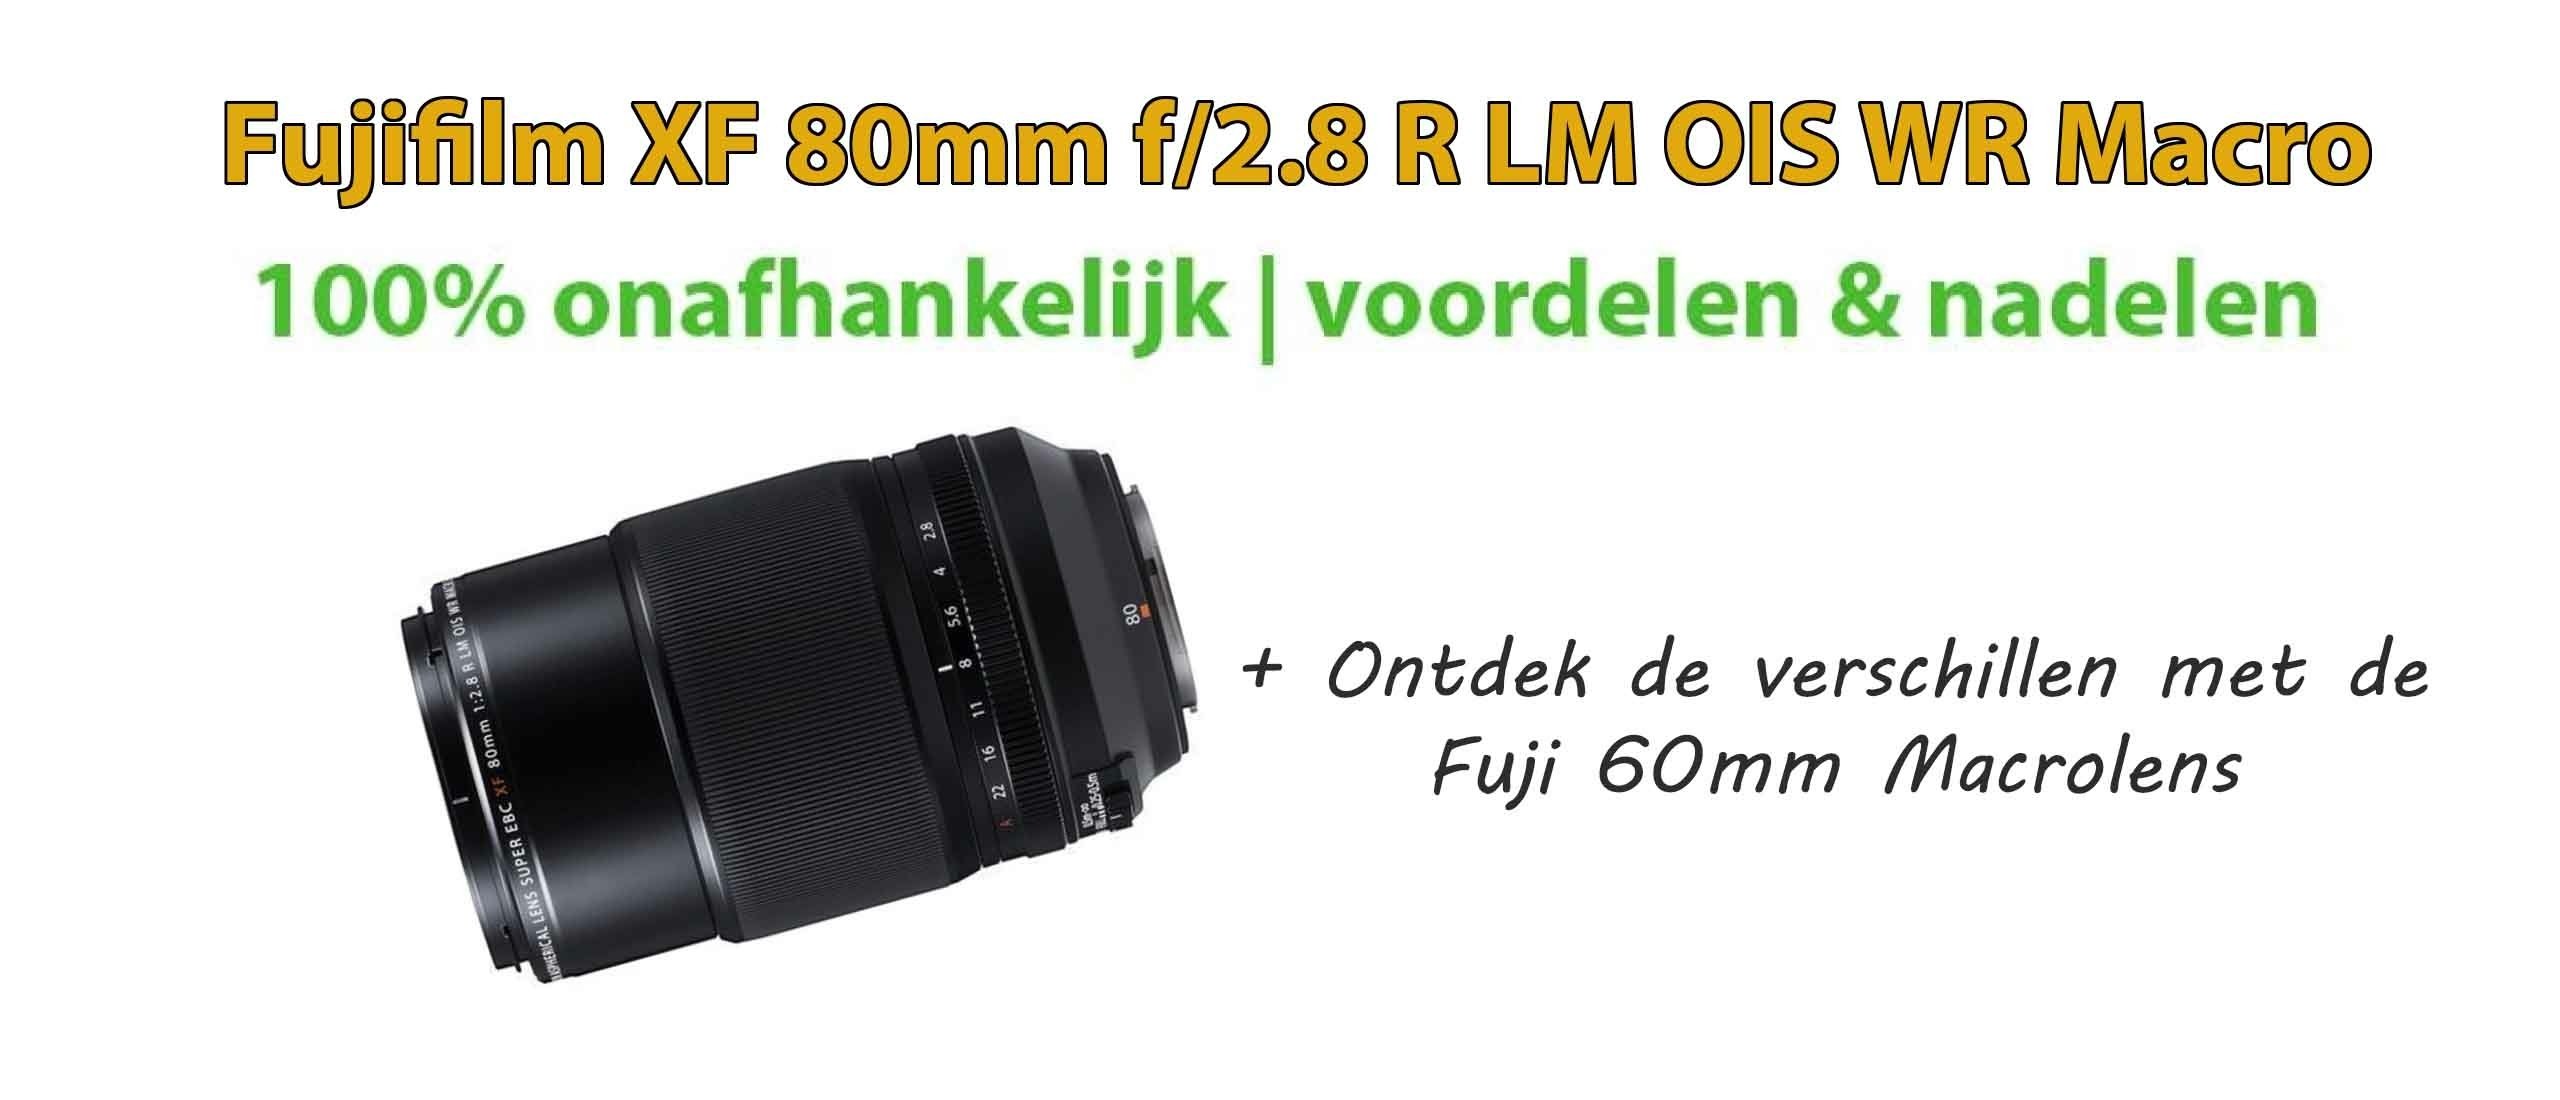 Fujifilm XF 80mm f2.8 R LM OIS WR Macro Review